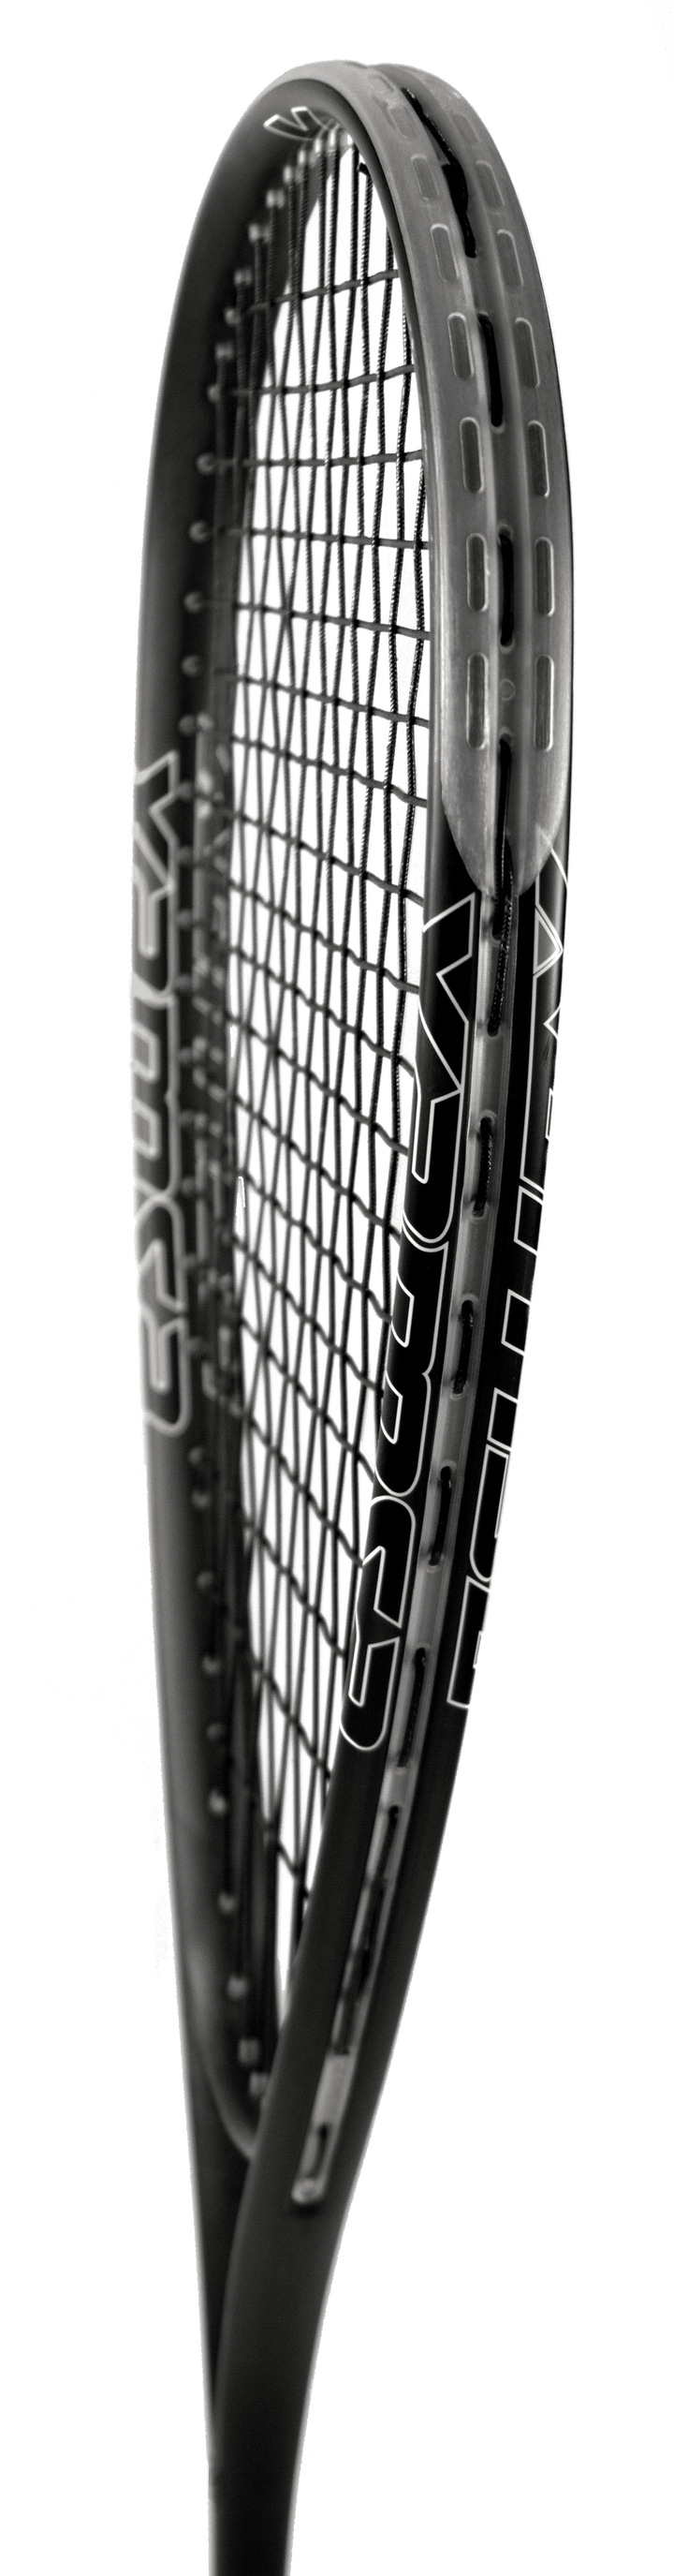 Xamsa Crucible Squash Racquet Strung - XamsaSquash